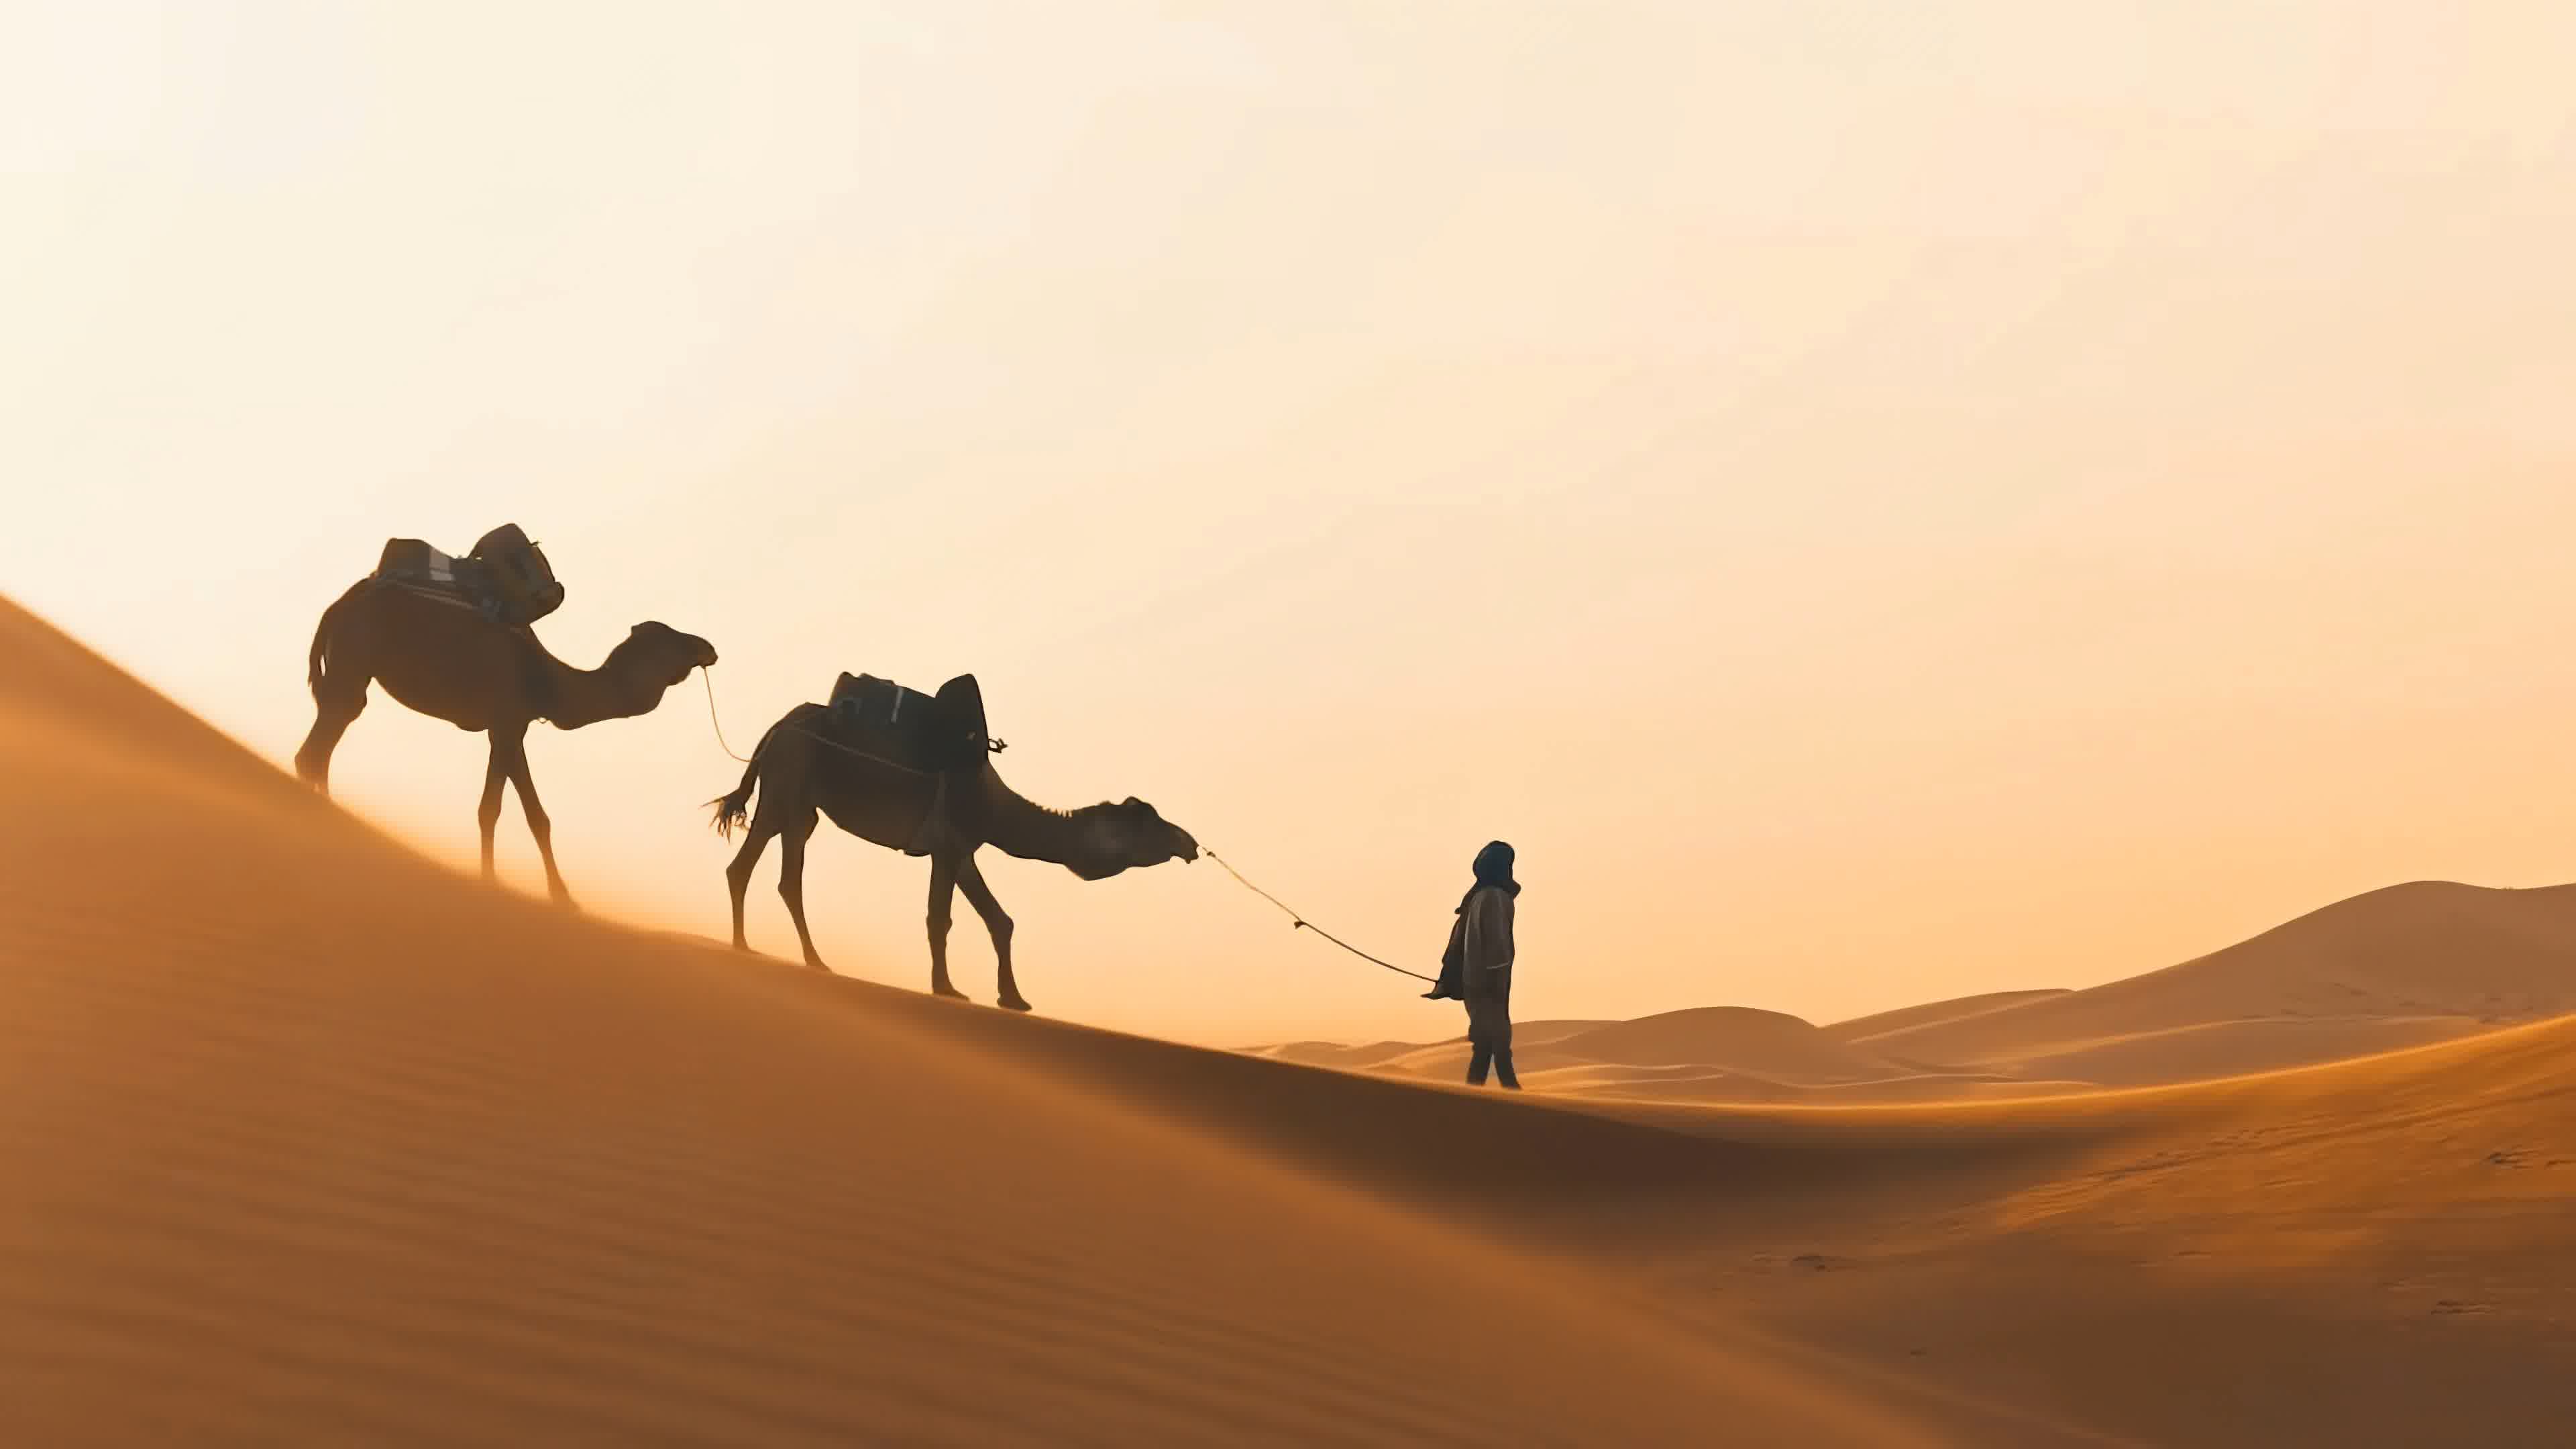 图片素材 : 野生动物, 动物群, 骆驼喜欢哺乳动物, 野马马, 阿拉伯骆驼 2304x1536 - - 74550 - 素材中国, 高清壁纸 ...